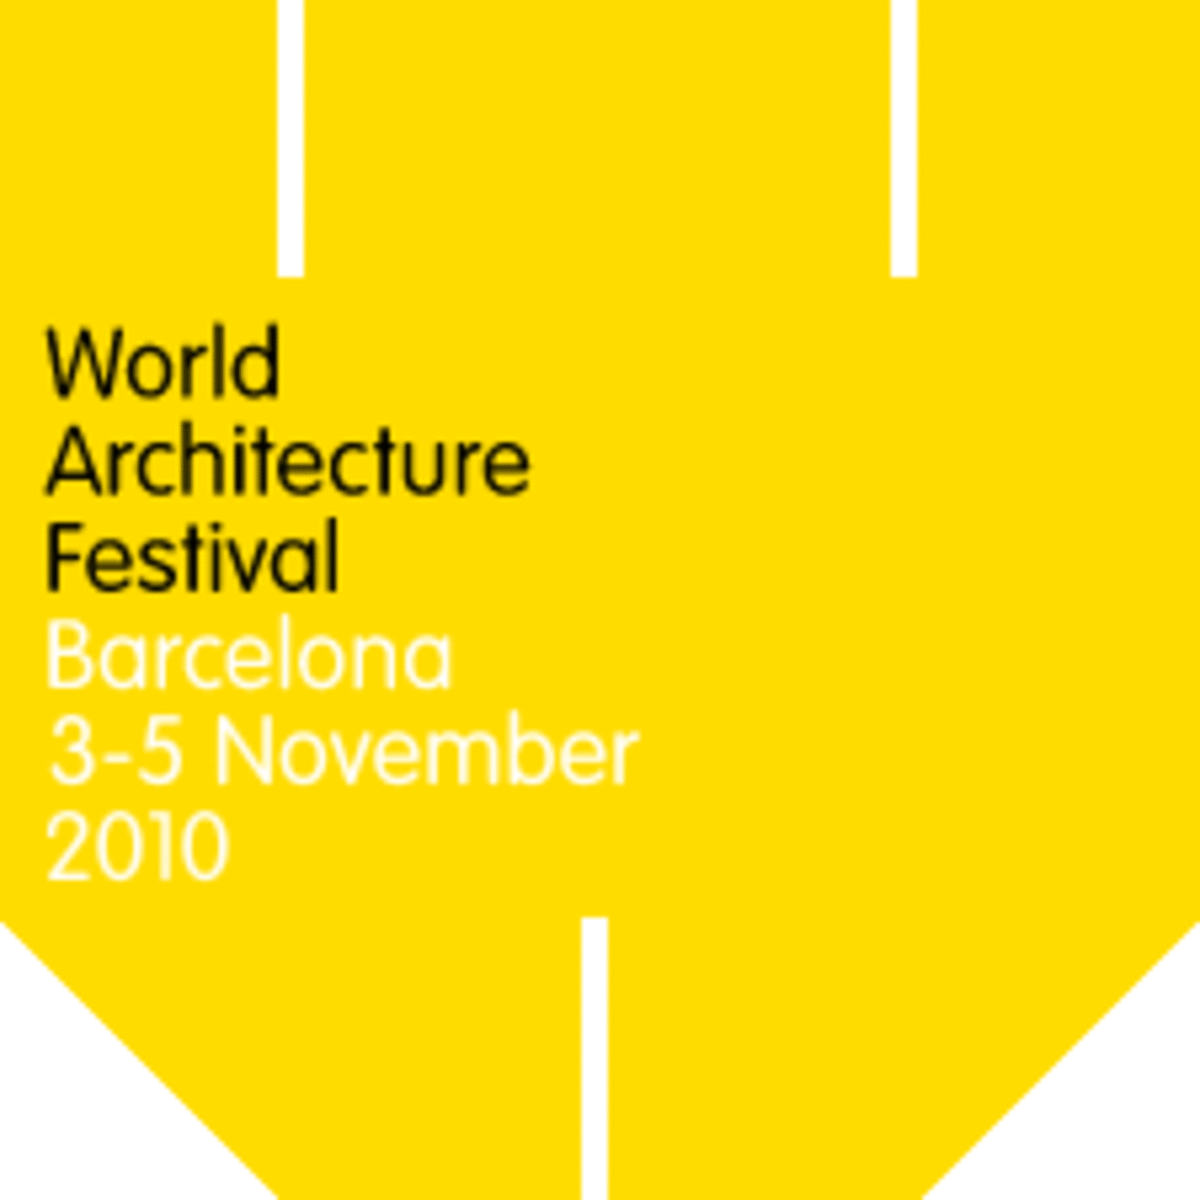  World Architecture Festival - Barcelona 2010 - odbędzie się w dniach 3.-5. listopada 2010